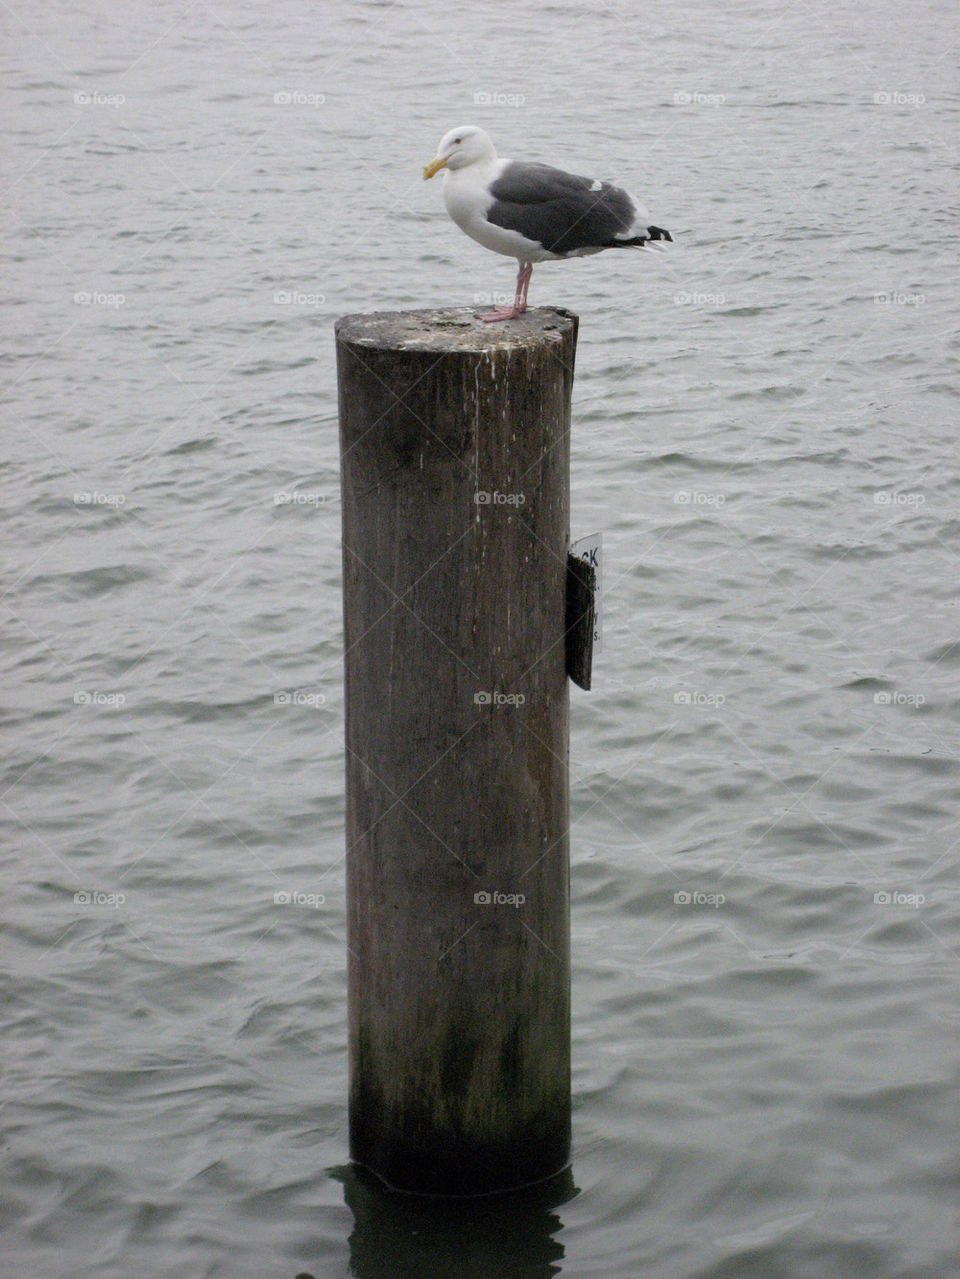 ocean bay pier seagull by kmnesbitt